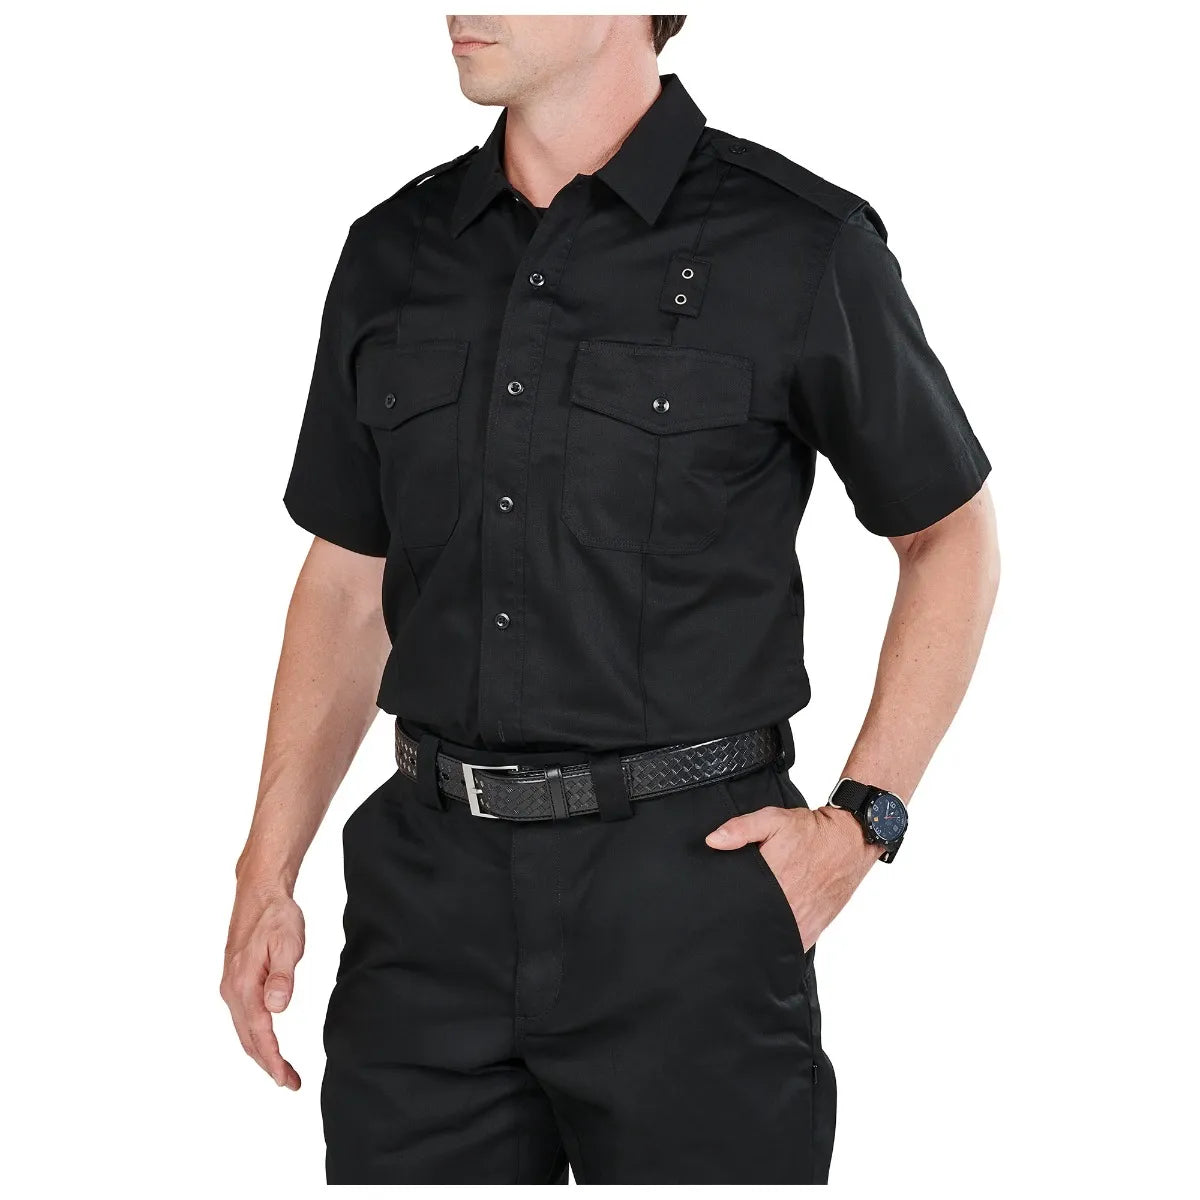 5.11 Tactical TWILL PDU Class A Short Sleeve Shirt